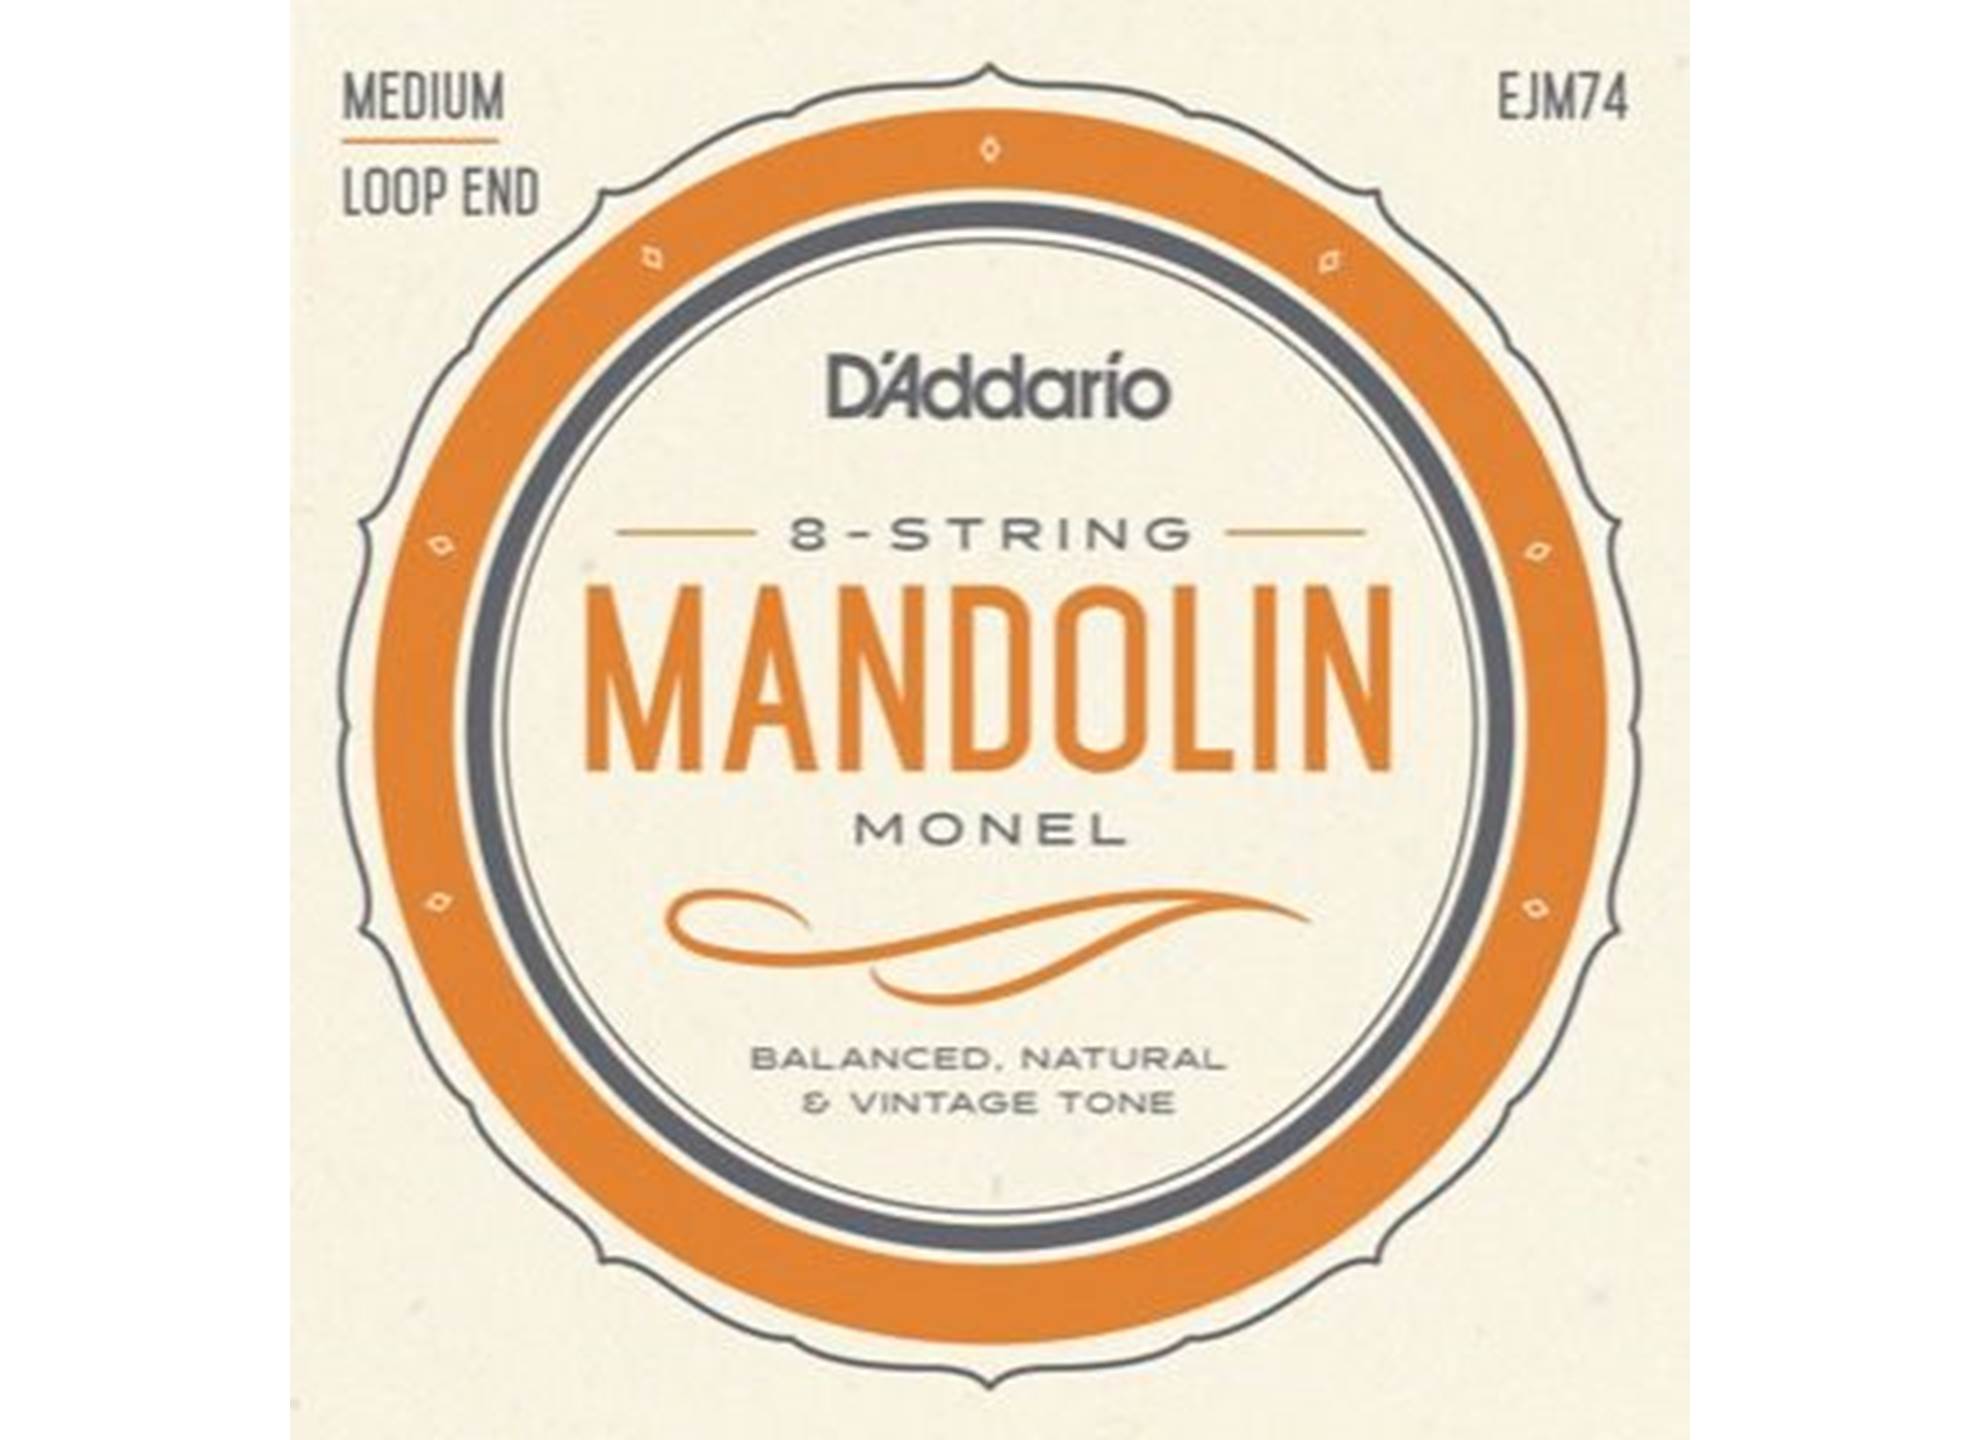 EJM74 Mandolin Monel Medium 011-040